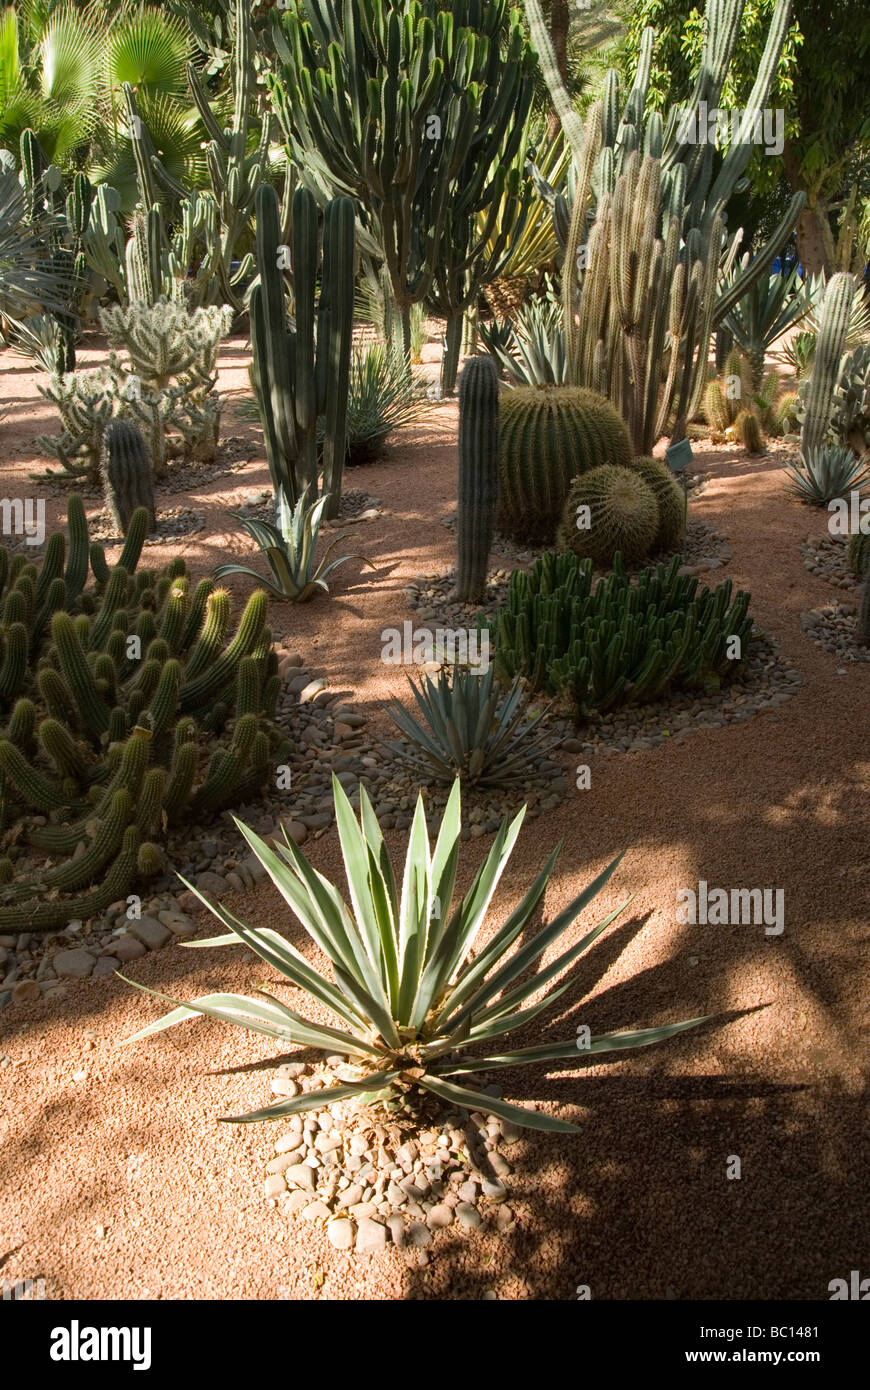 Cactus poussant dans la jardins Marjorelle à Marrakech Maroc Afrique du Nord Banque D'Images